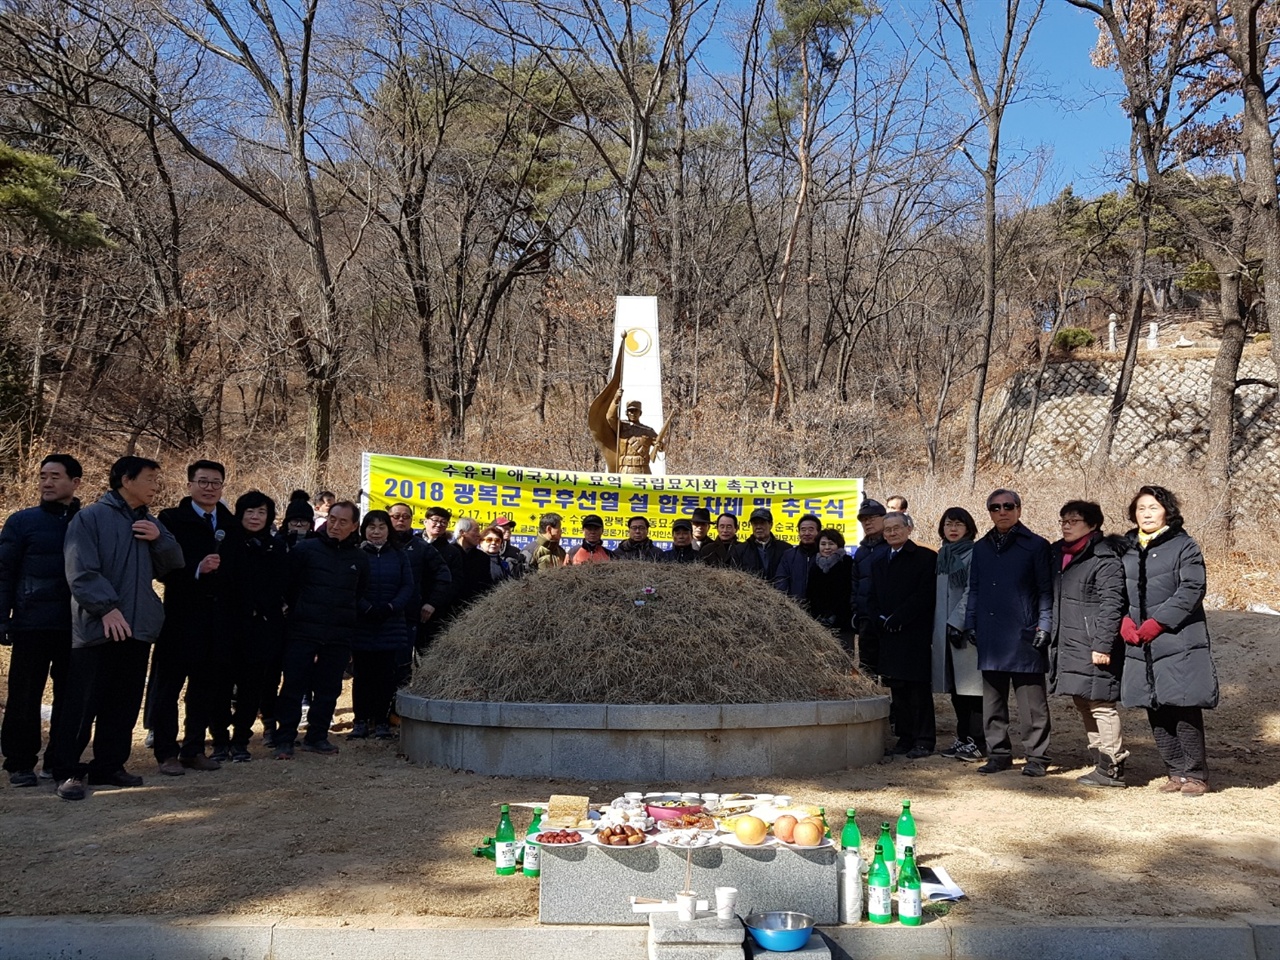 17일, 강북구 수유리에 있는 후손없는 광복군 합동 묘소에 시민사회들과 지역주민들이 참여하여 설날 차례상을 올렸다.